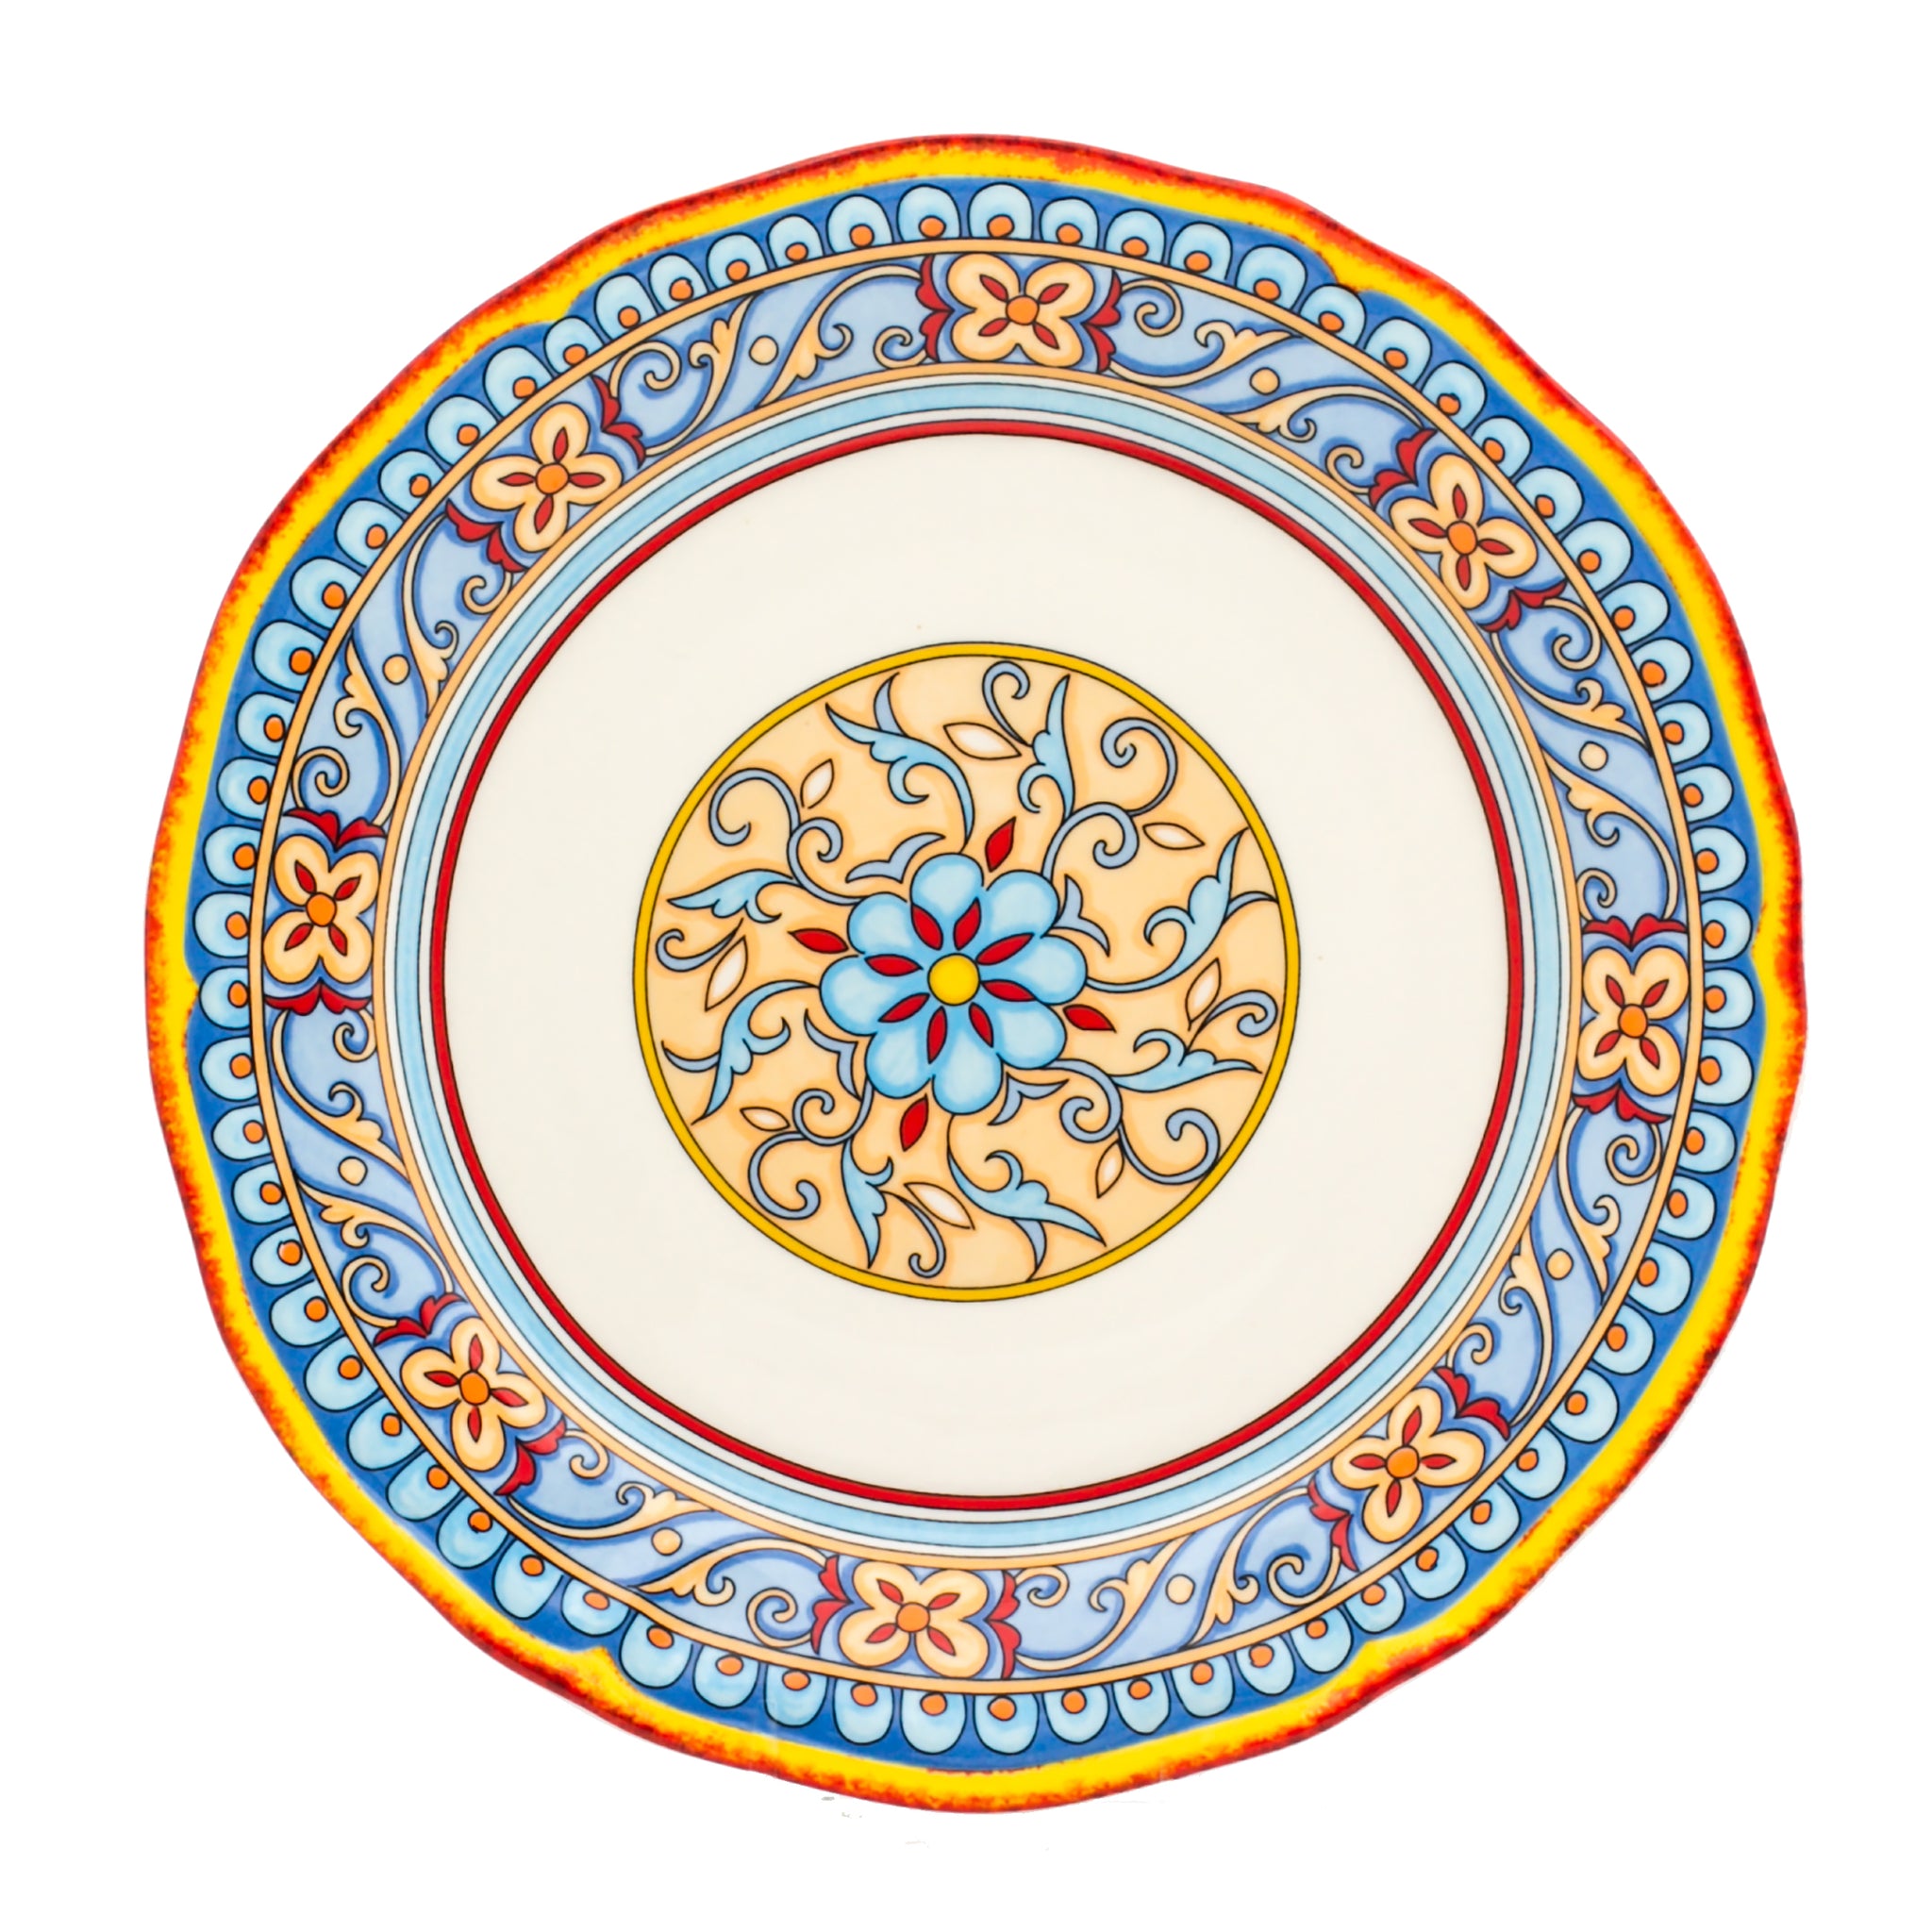 Duomo 4 Piece Dinner Plate Set - Euro Ceramica 